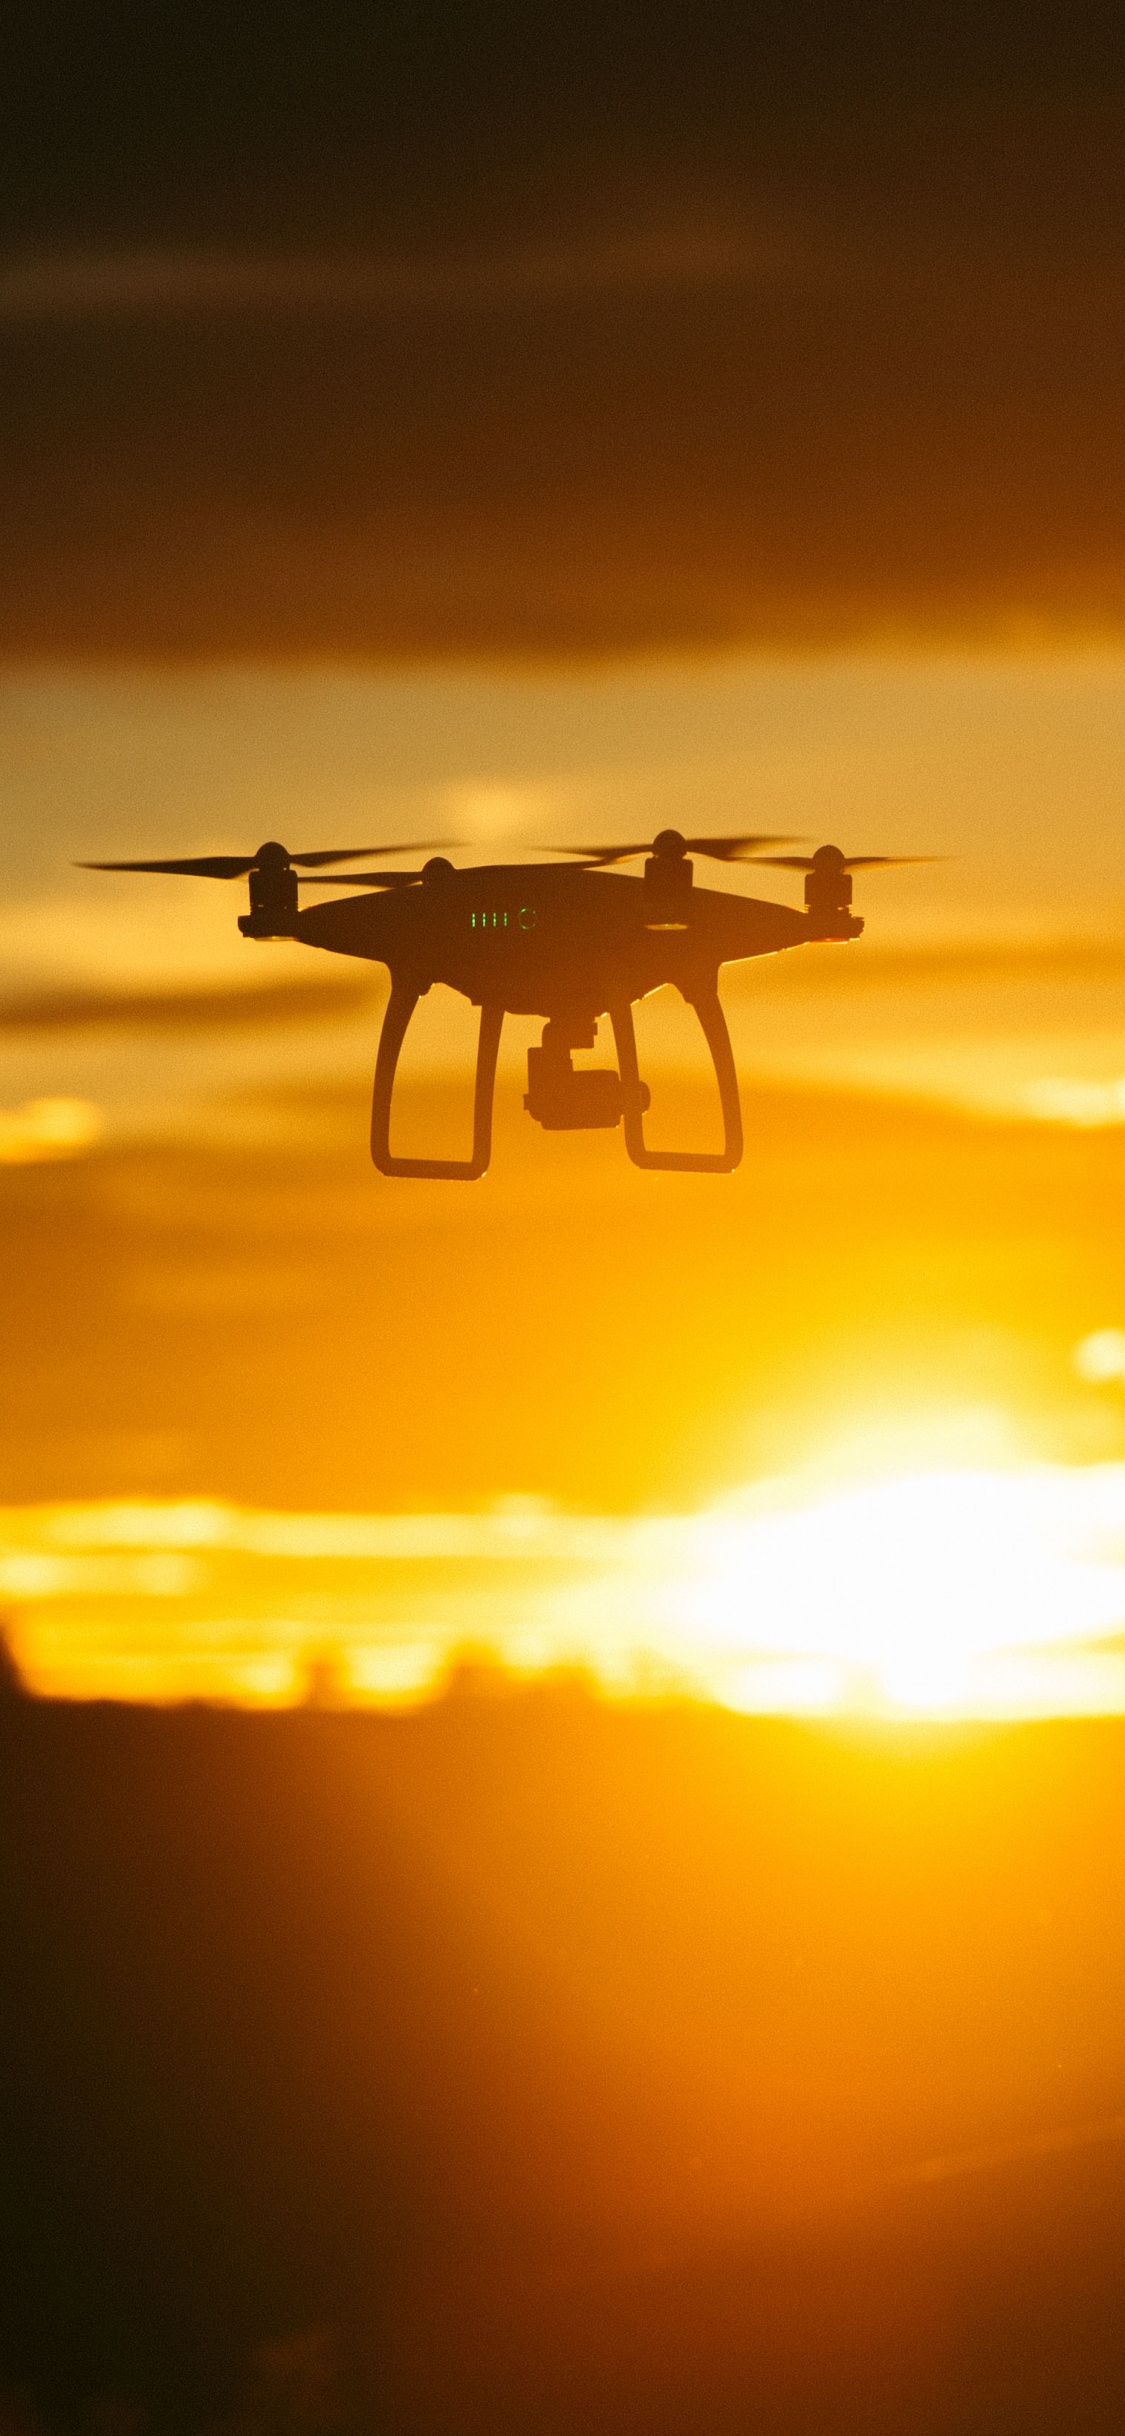 Drone Blanco Volando Durante la Puesta de Sol. Wallpaper in 1125x2436 Resolution